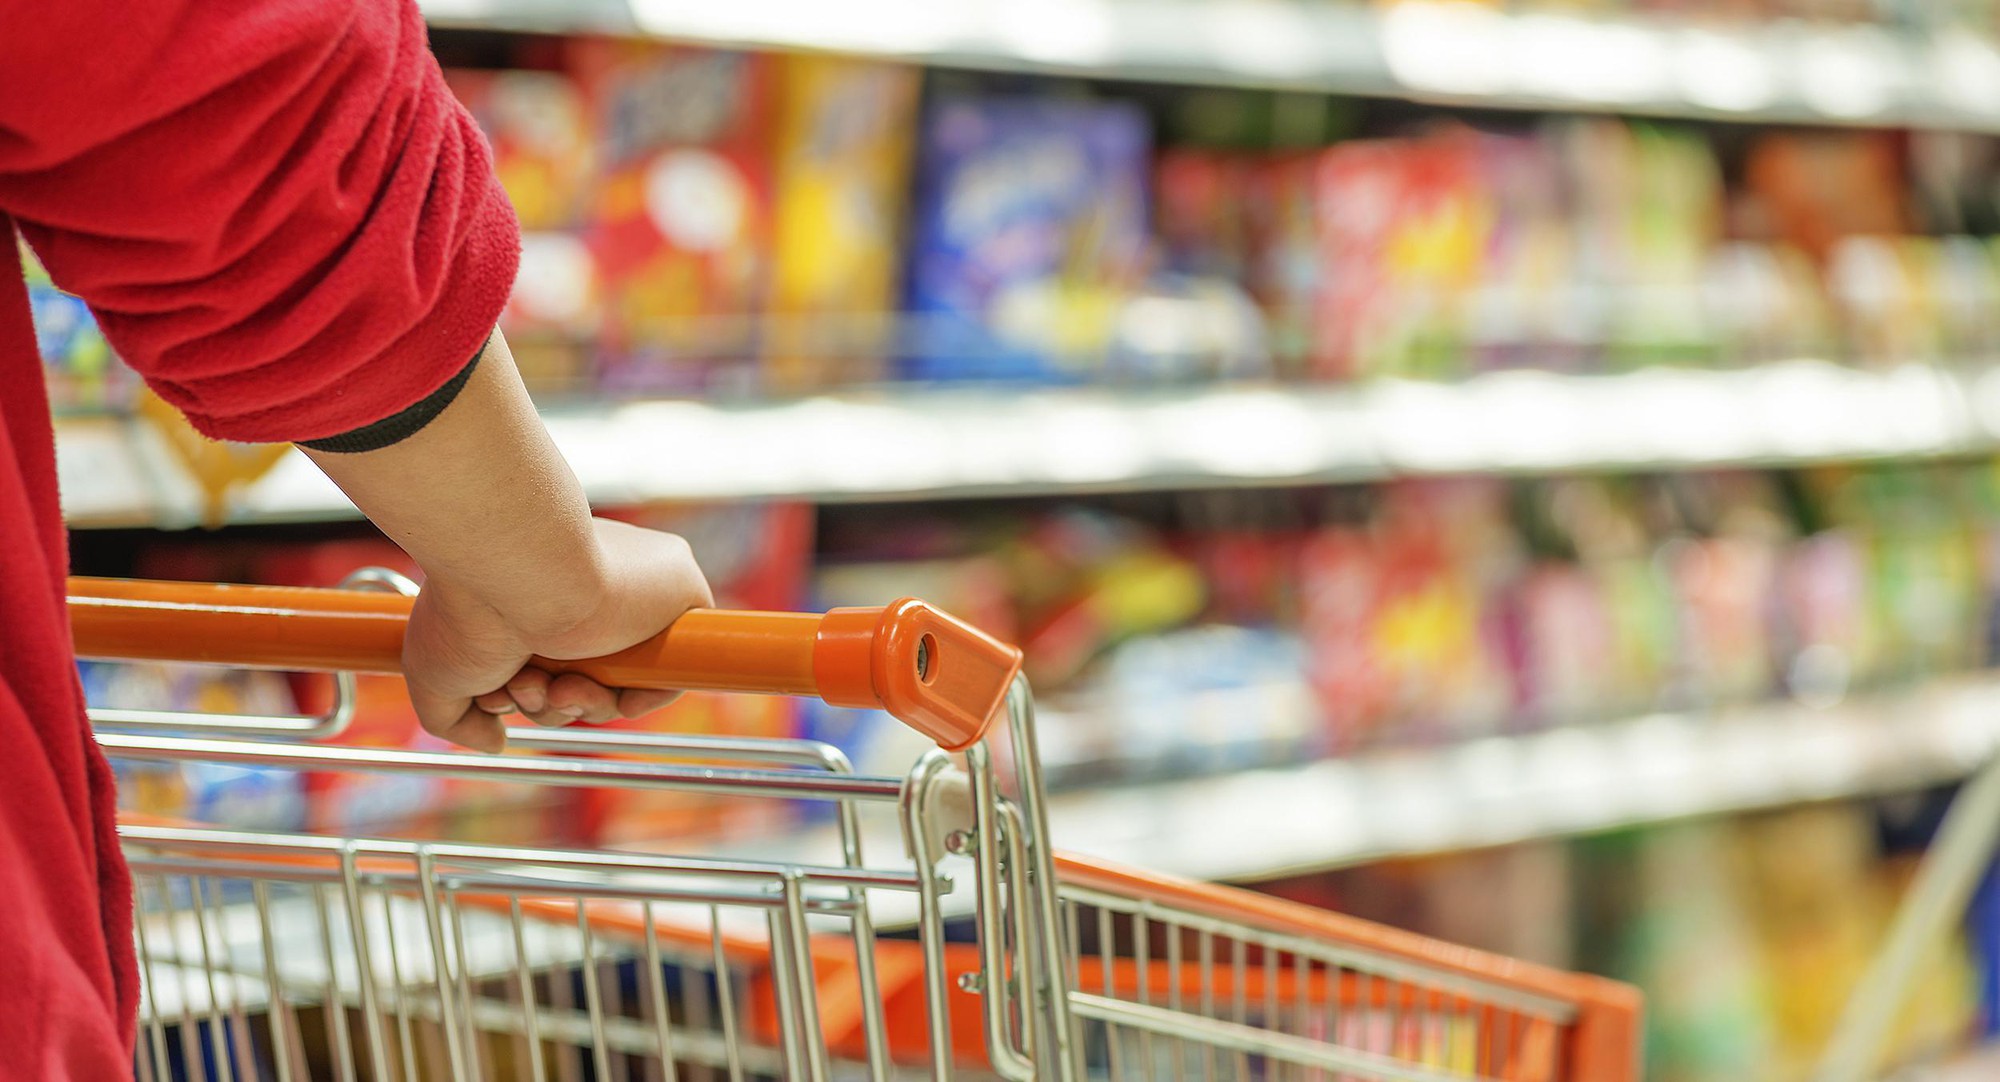 Đây là 10 bí mật mà các siêu thị luôn muốn giấu nhẹm khách hàng khi mua sắm - Ảnh 6.